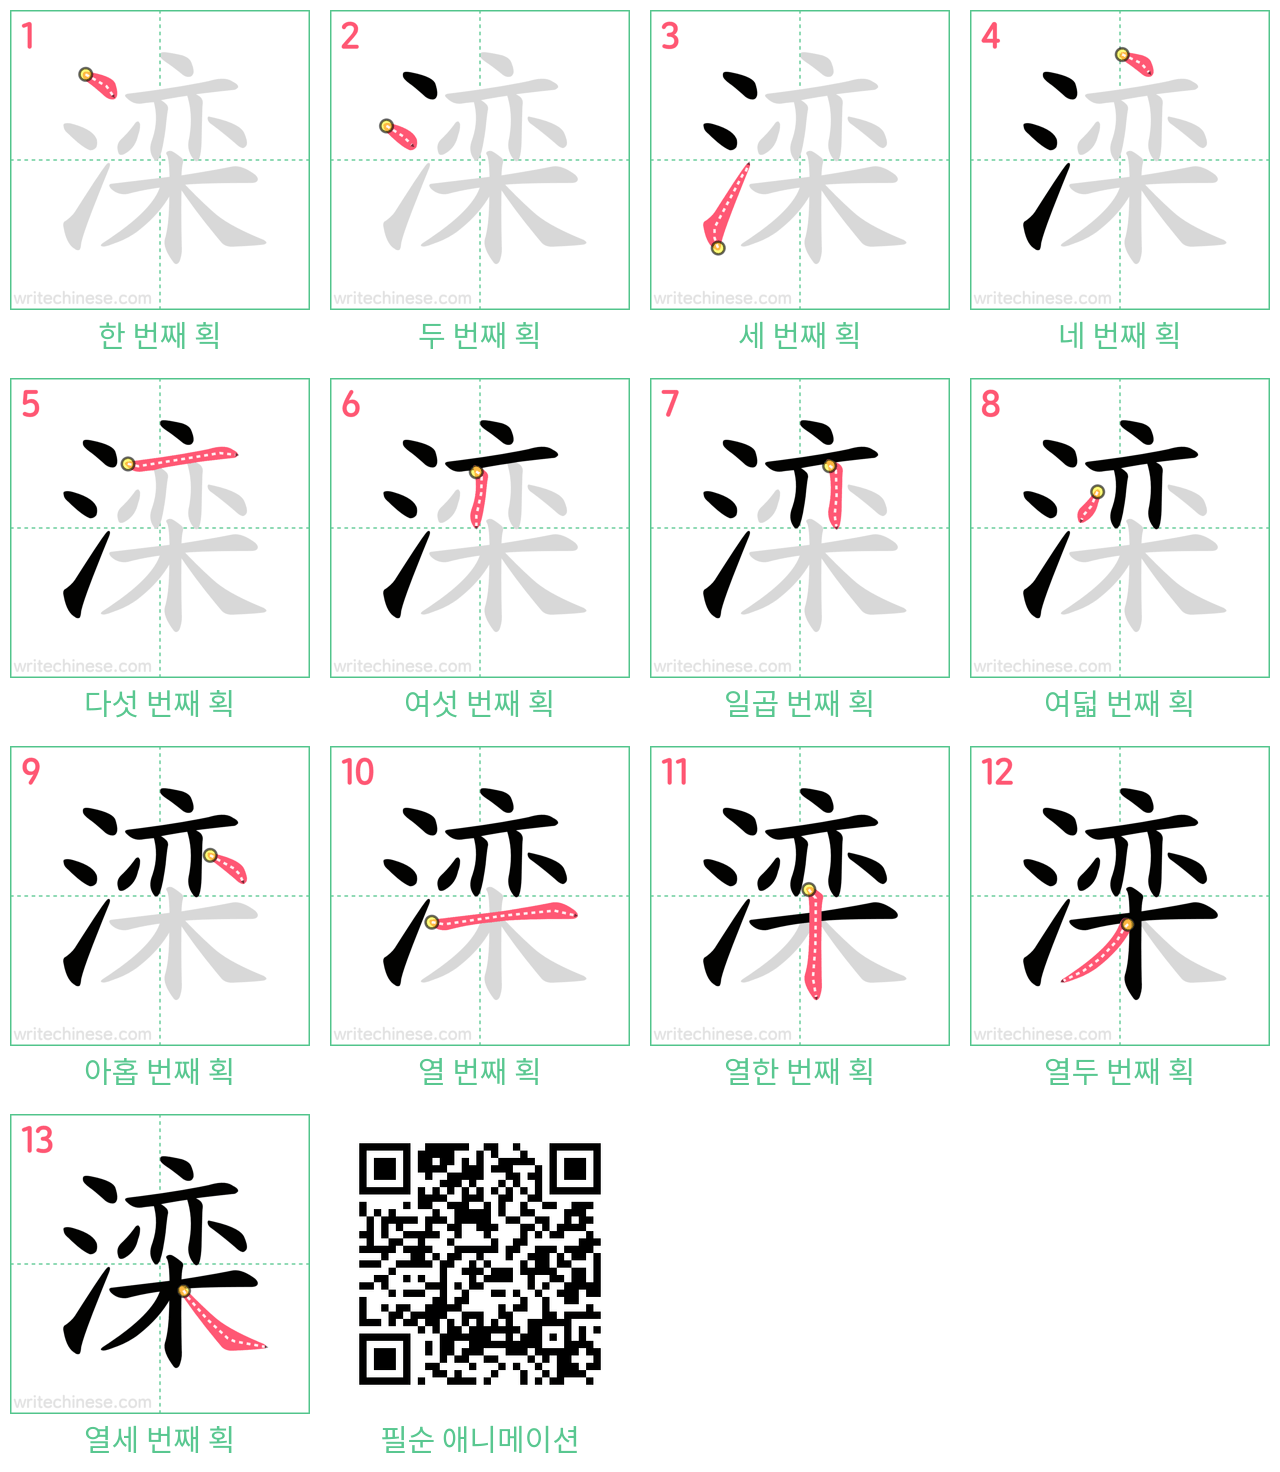 滦 step-by-step stroke order diagrams